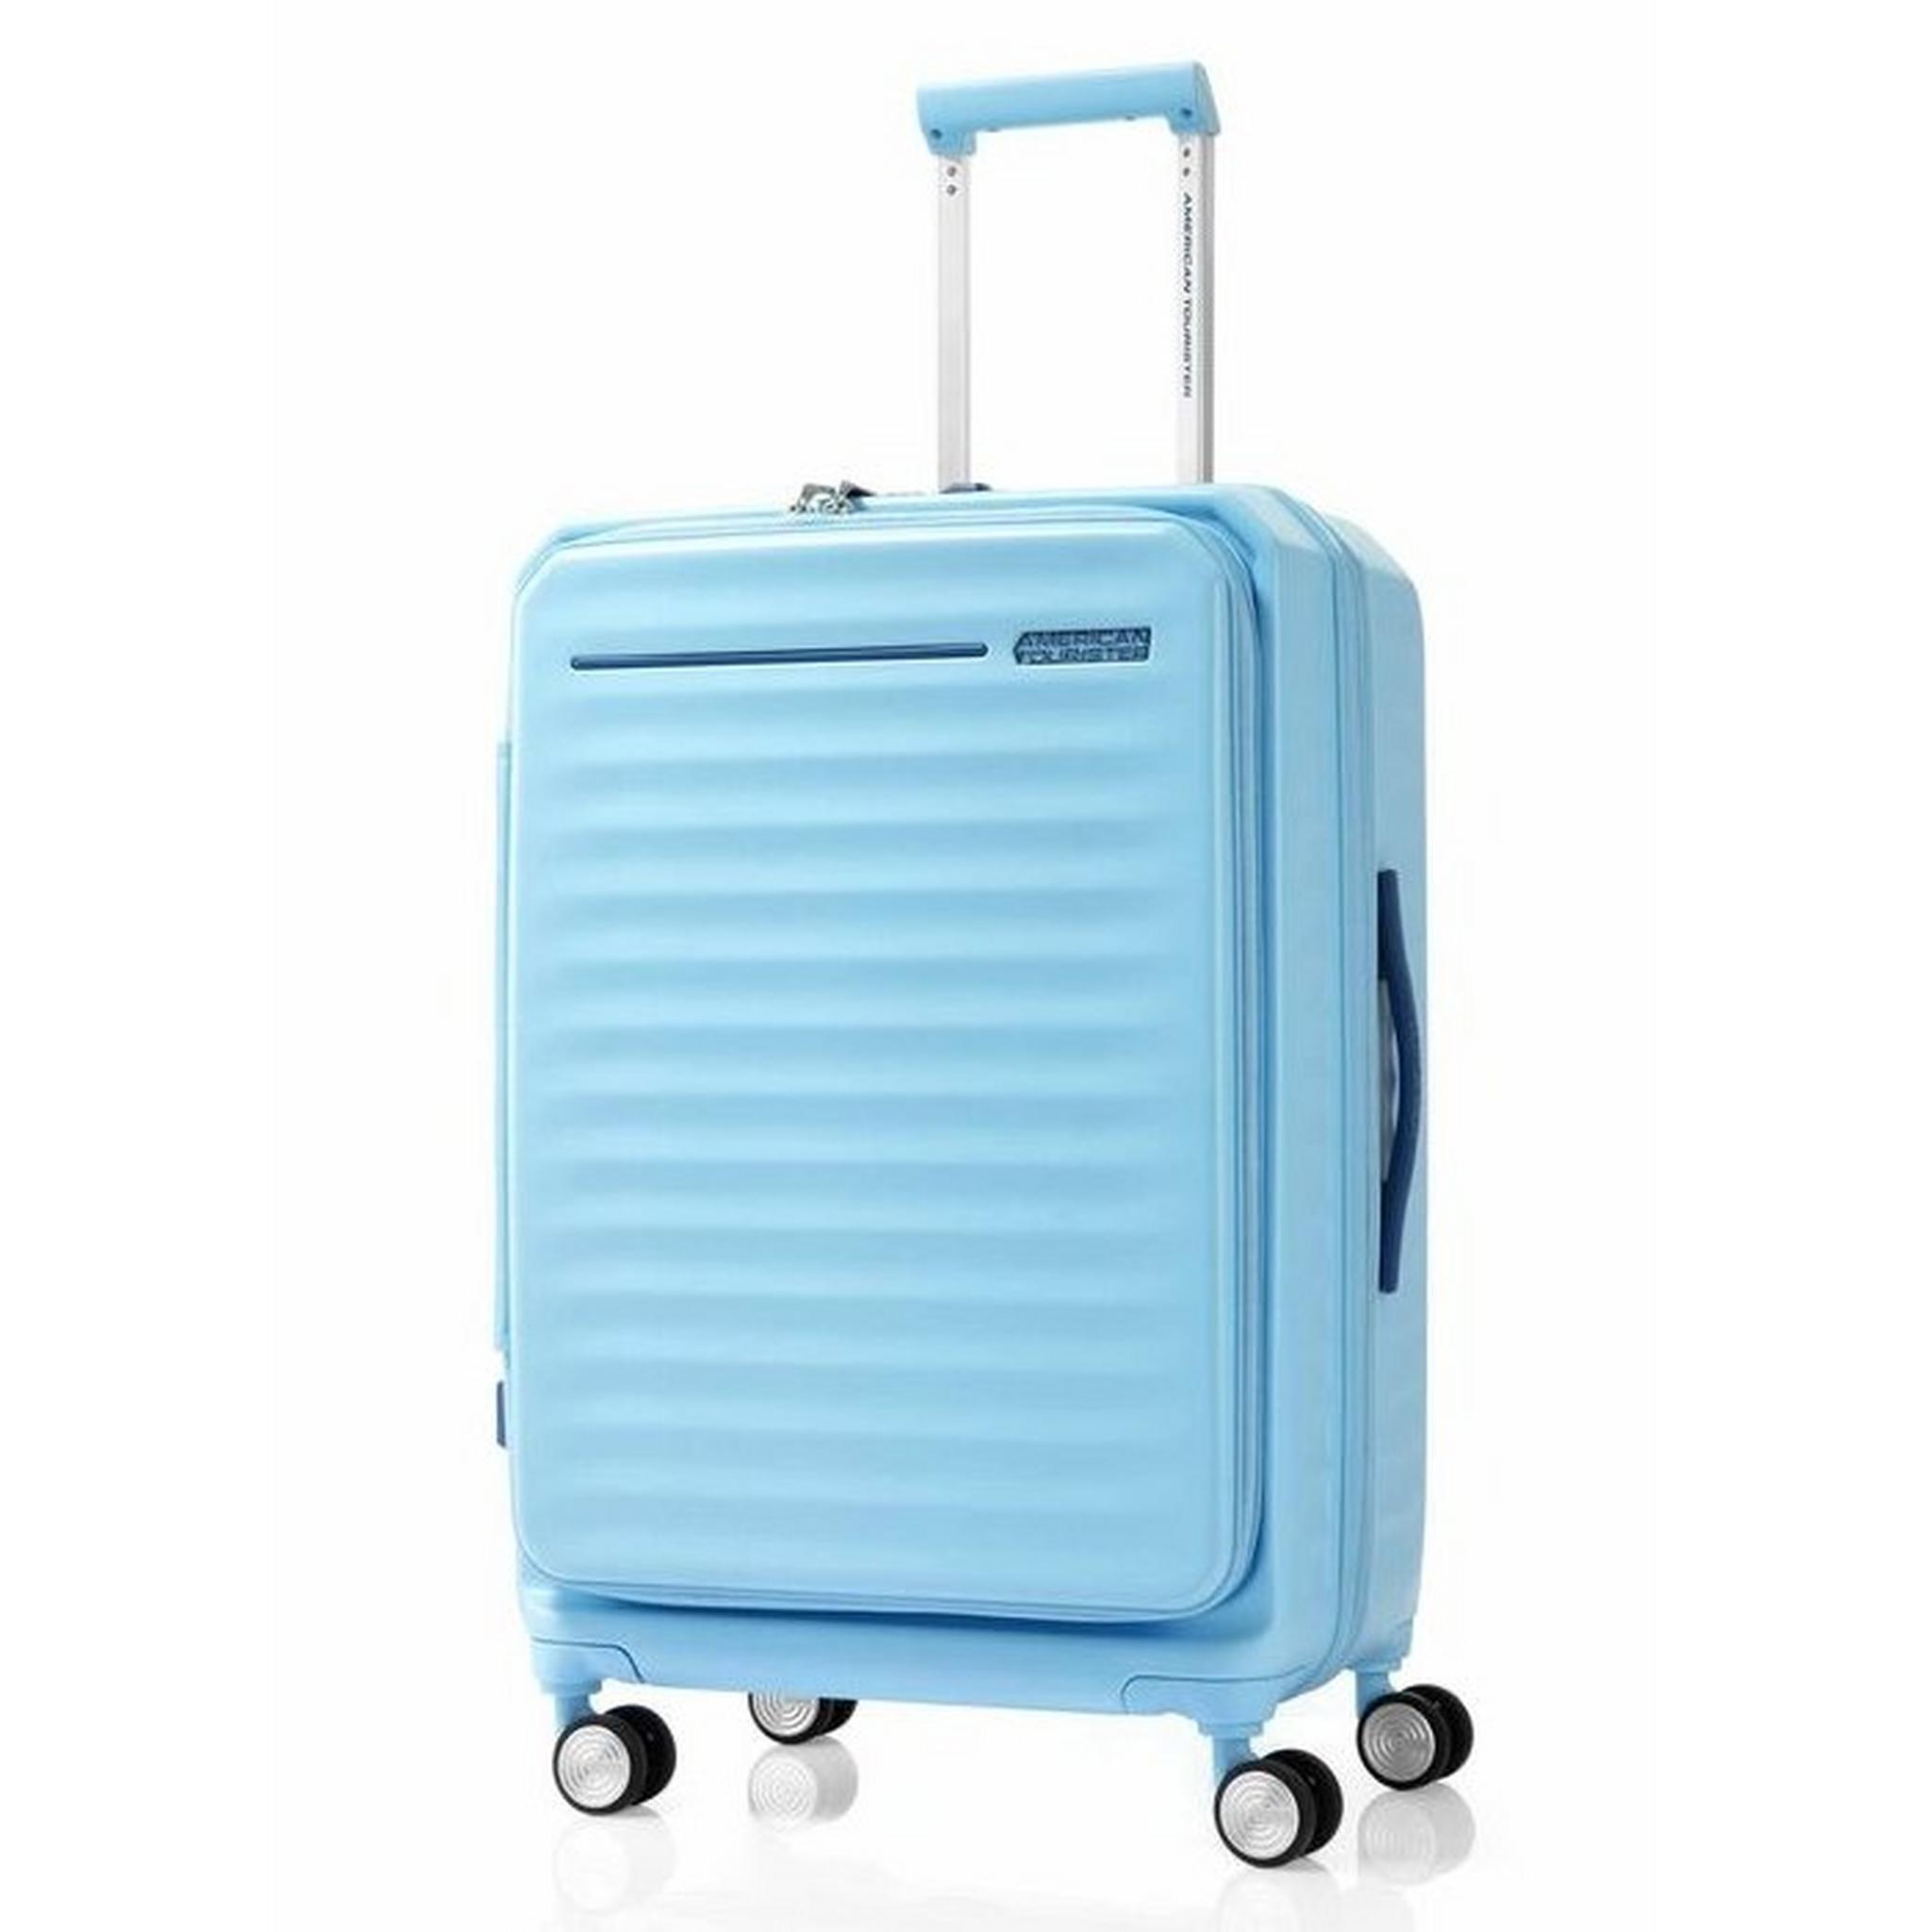 حقيبة سفر أمريكان توريستر فرونتك سبينر 68 سم أزرق